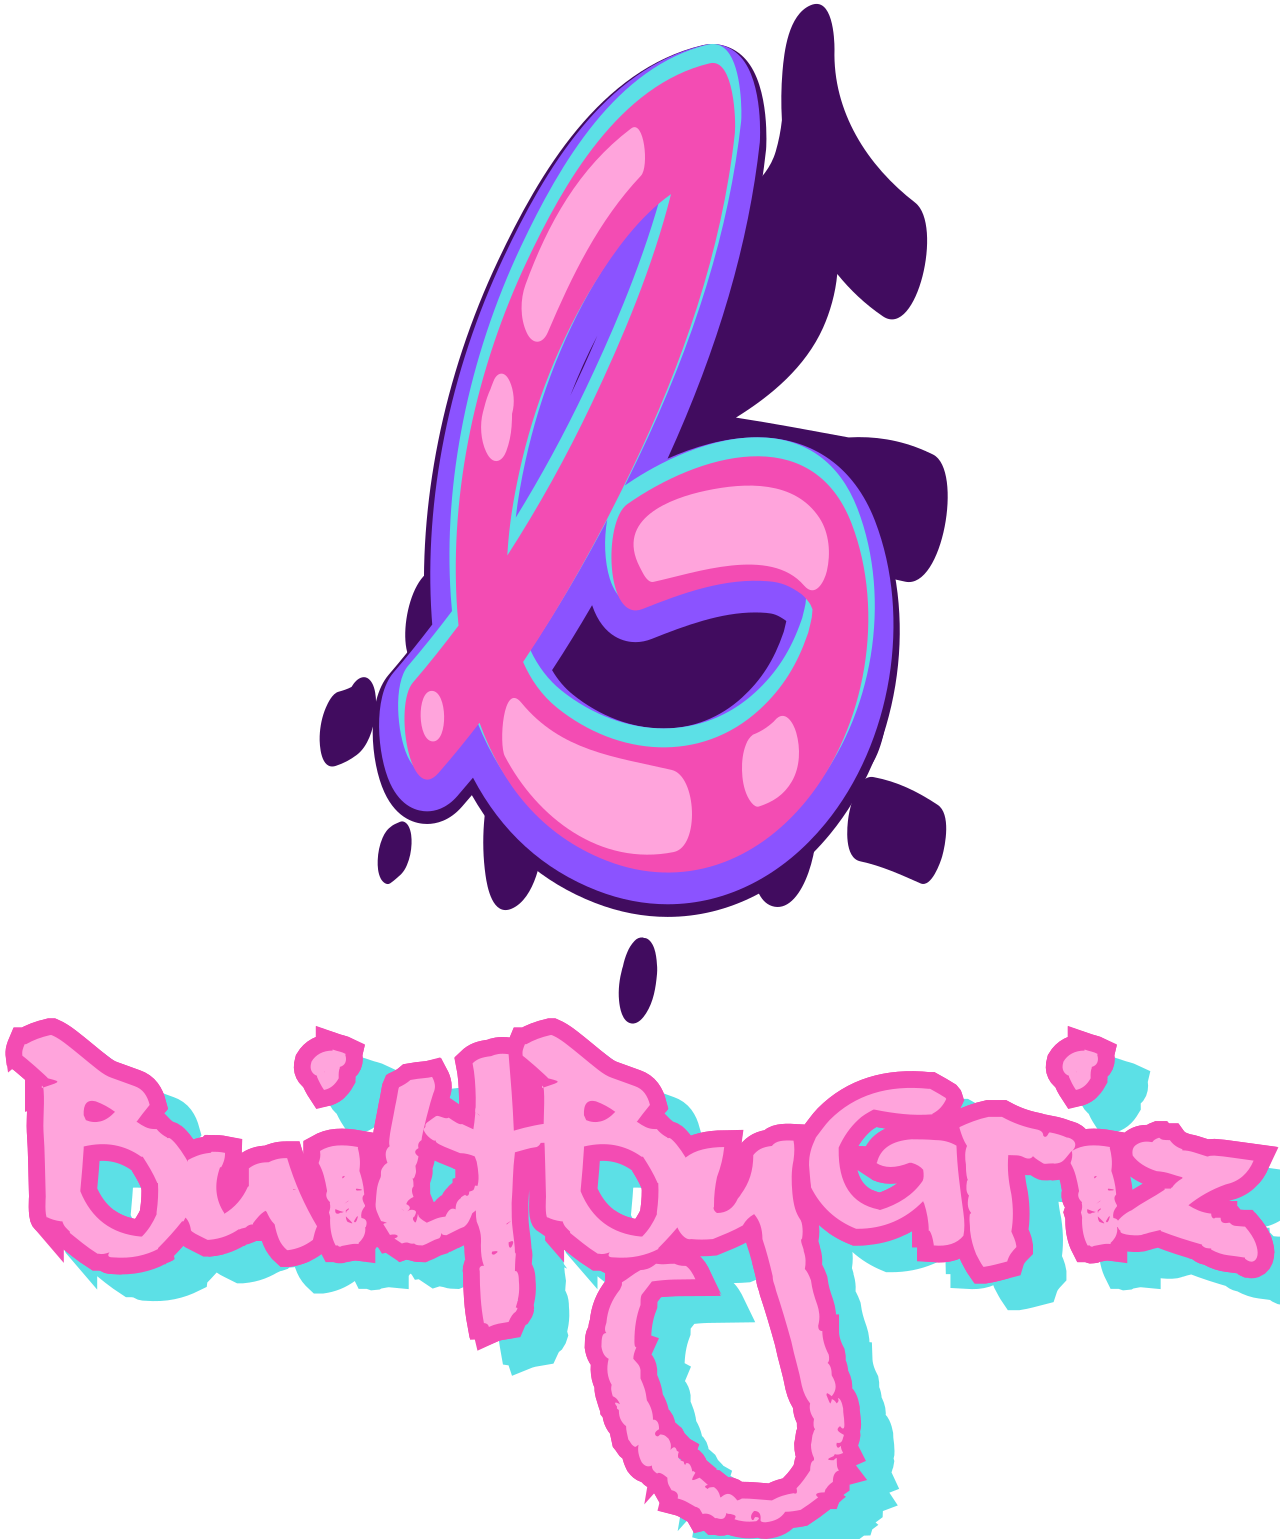 BuiltByGriz's logo